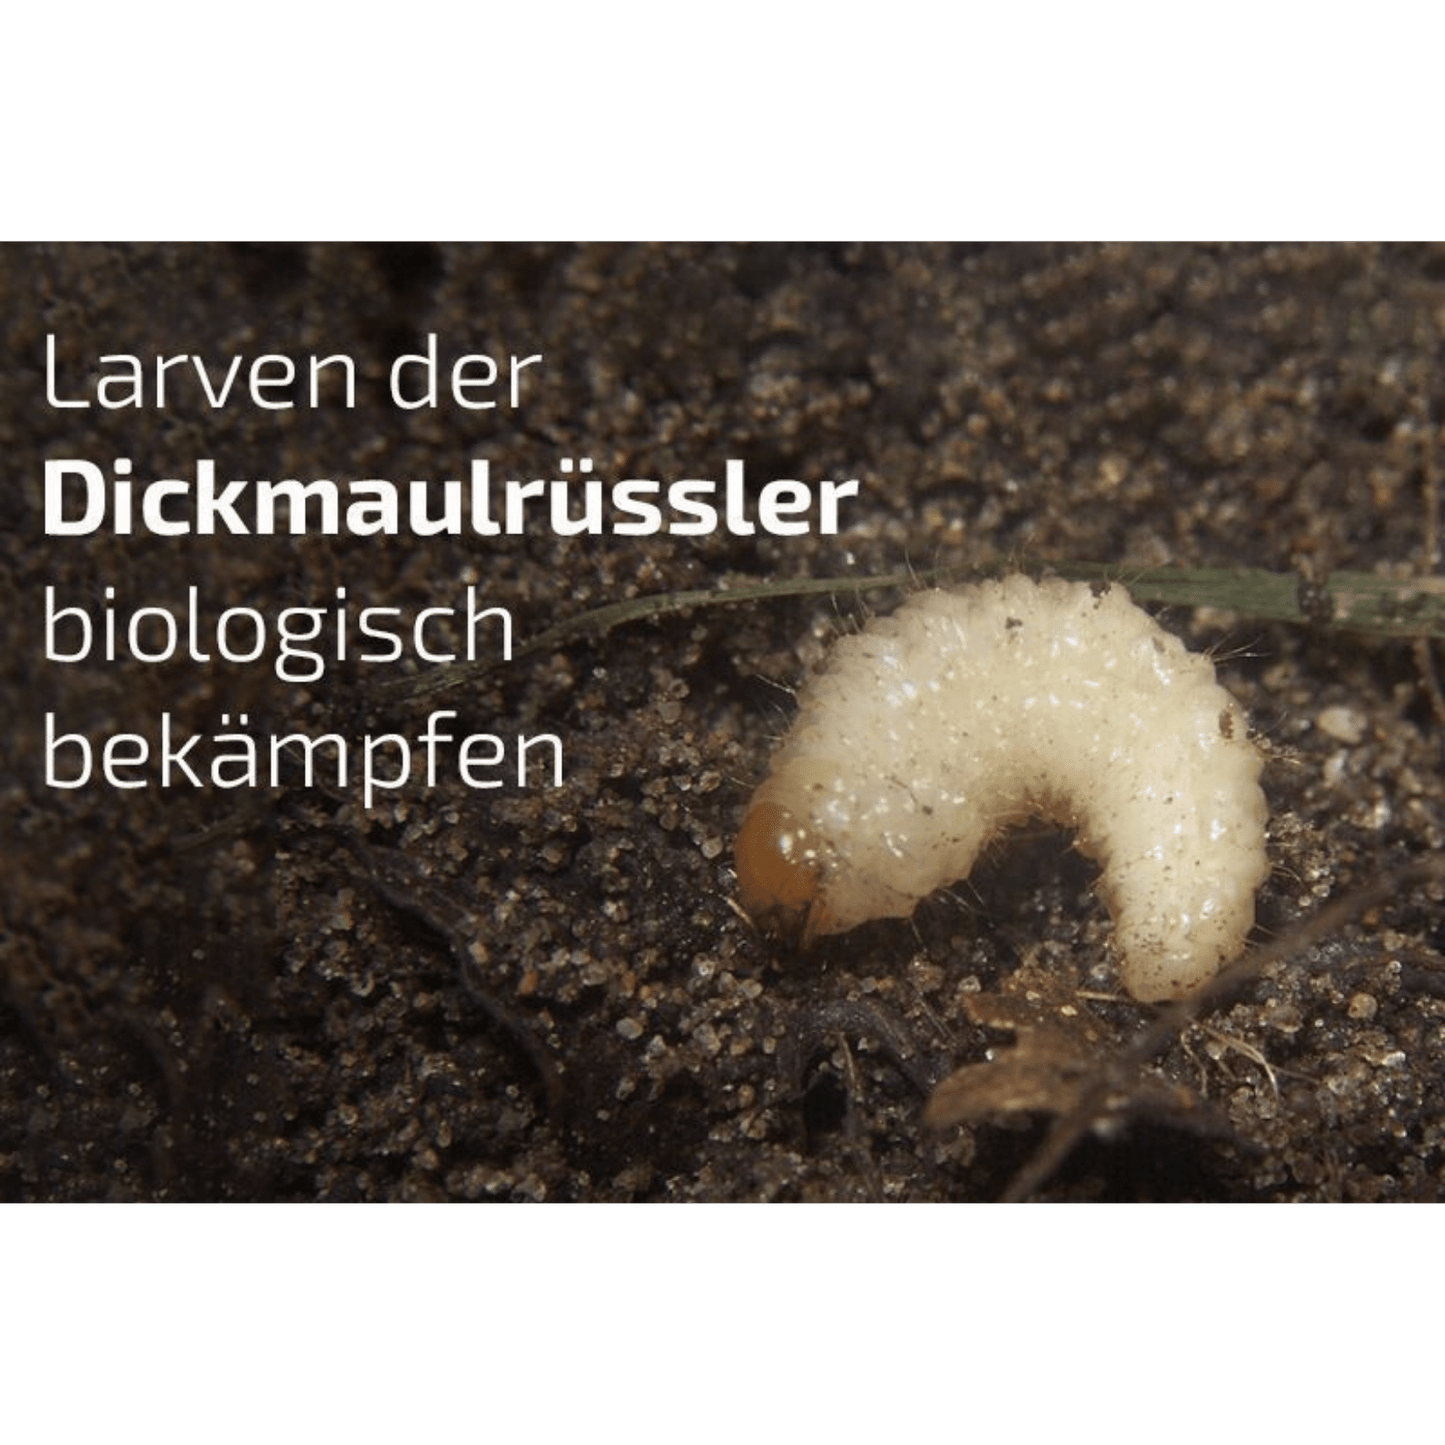 Nemamax - HD Nematoden gegen Dickmaulrüssler - Pfl.Reg.Nr. 4386